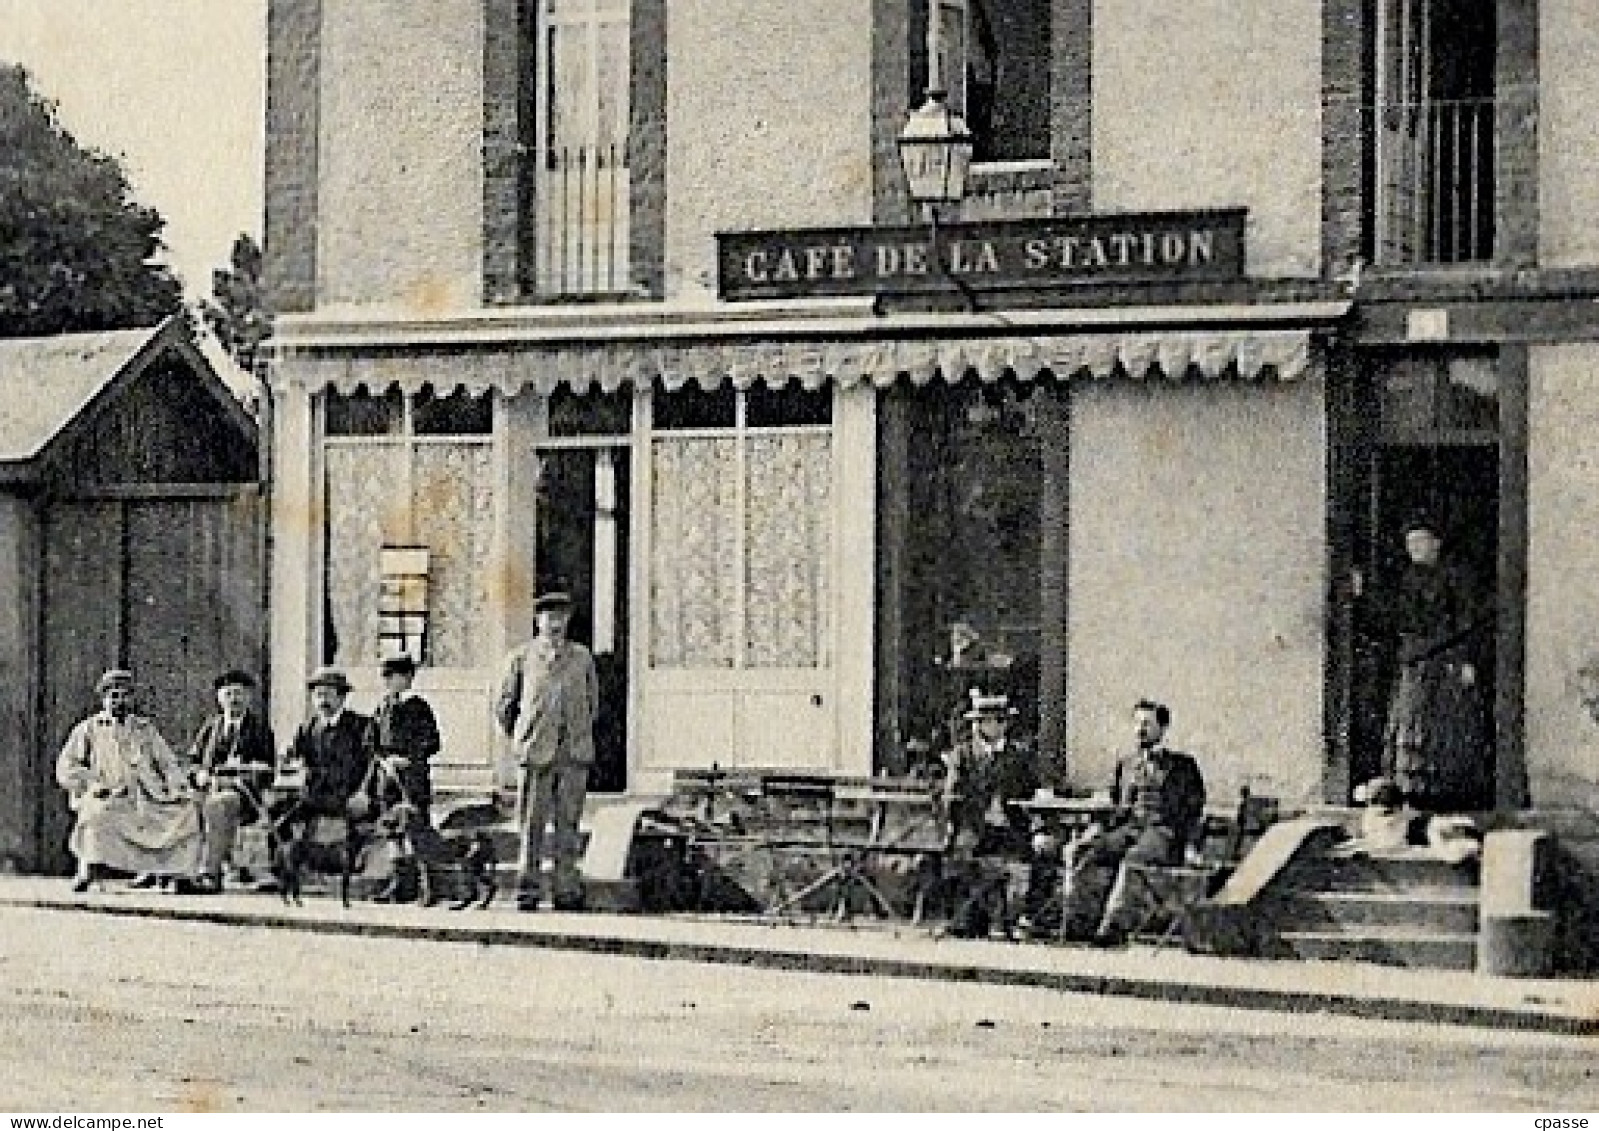 Rare CPA 14 PONT-L'EVÊQUE - CAFE De La STATION (TRAMWAY) - Pont-l'Evèque